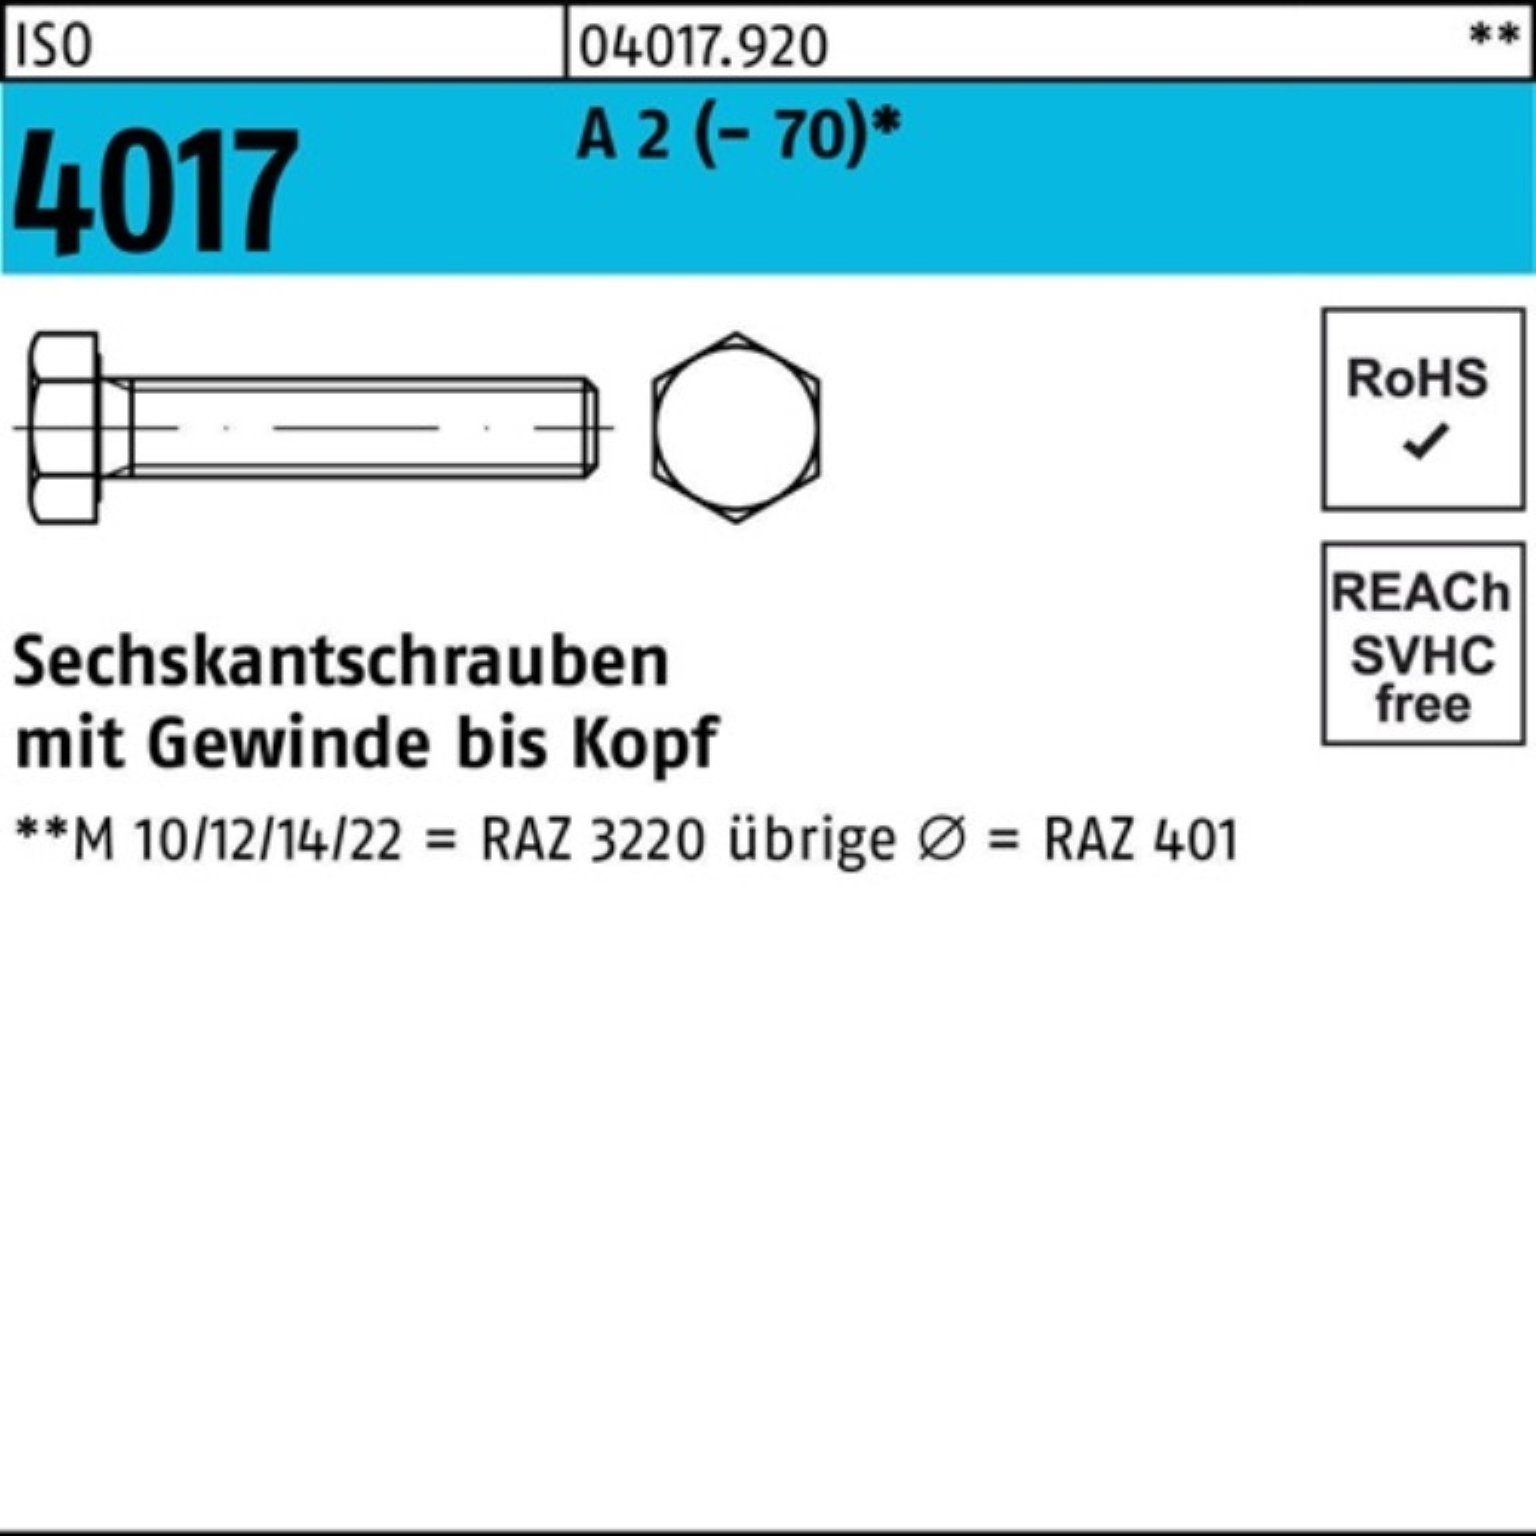 Bufab Sechskantschraube 100er Pack Sechskantschraube ISO 4017 VG M12x 65 A 2 (70) 50 Stück